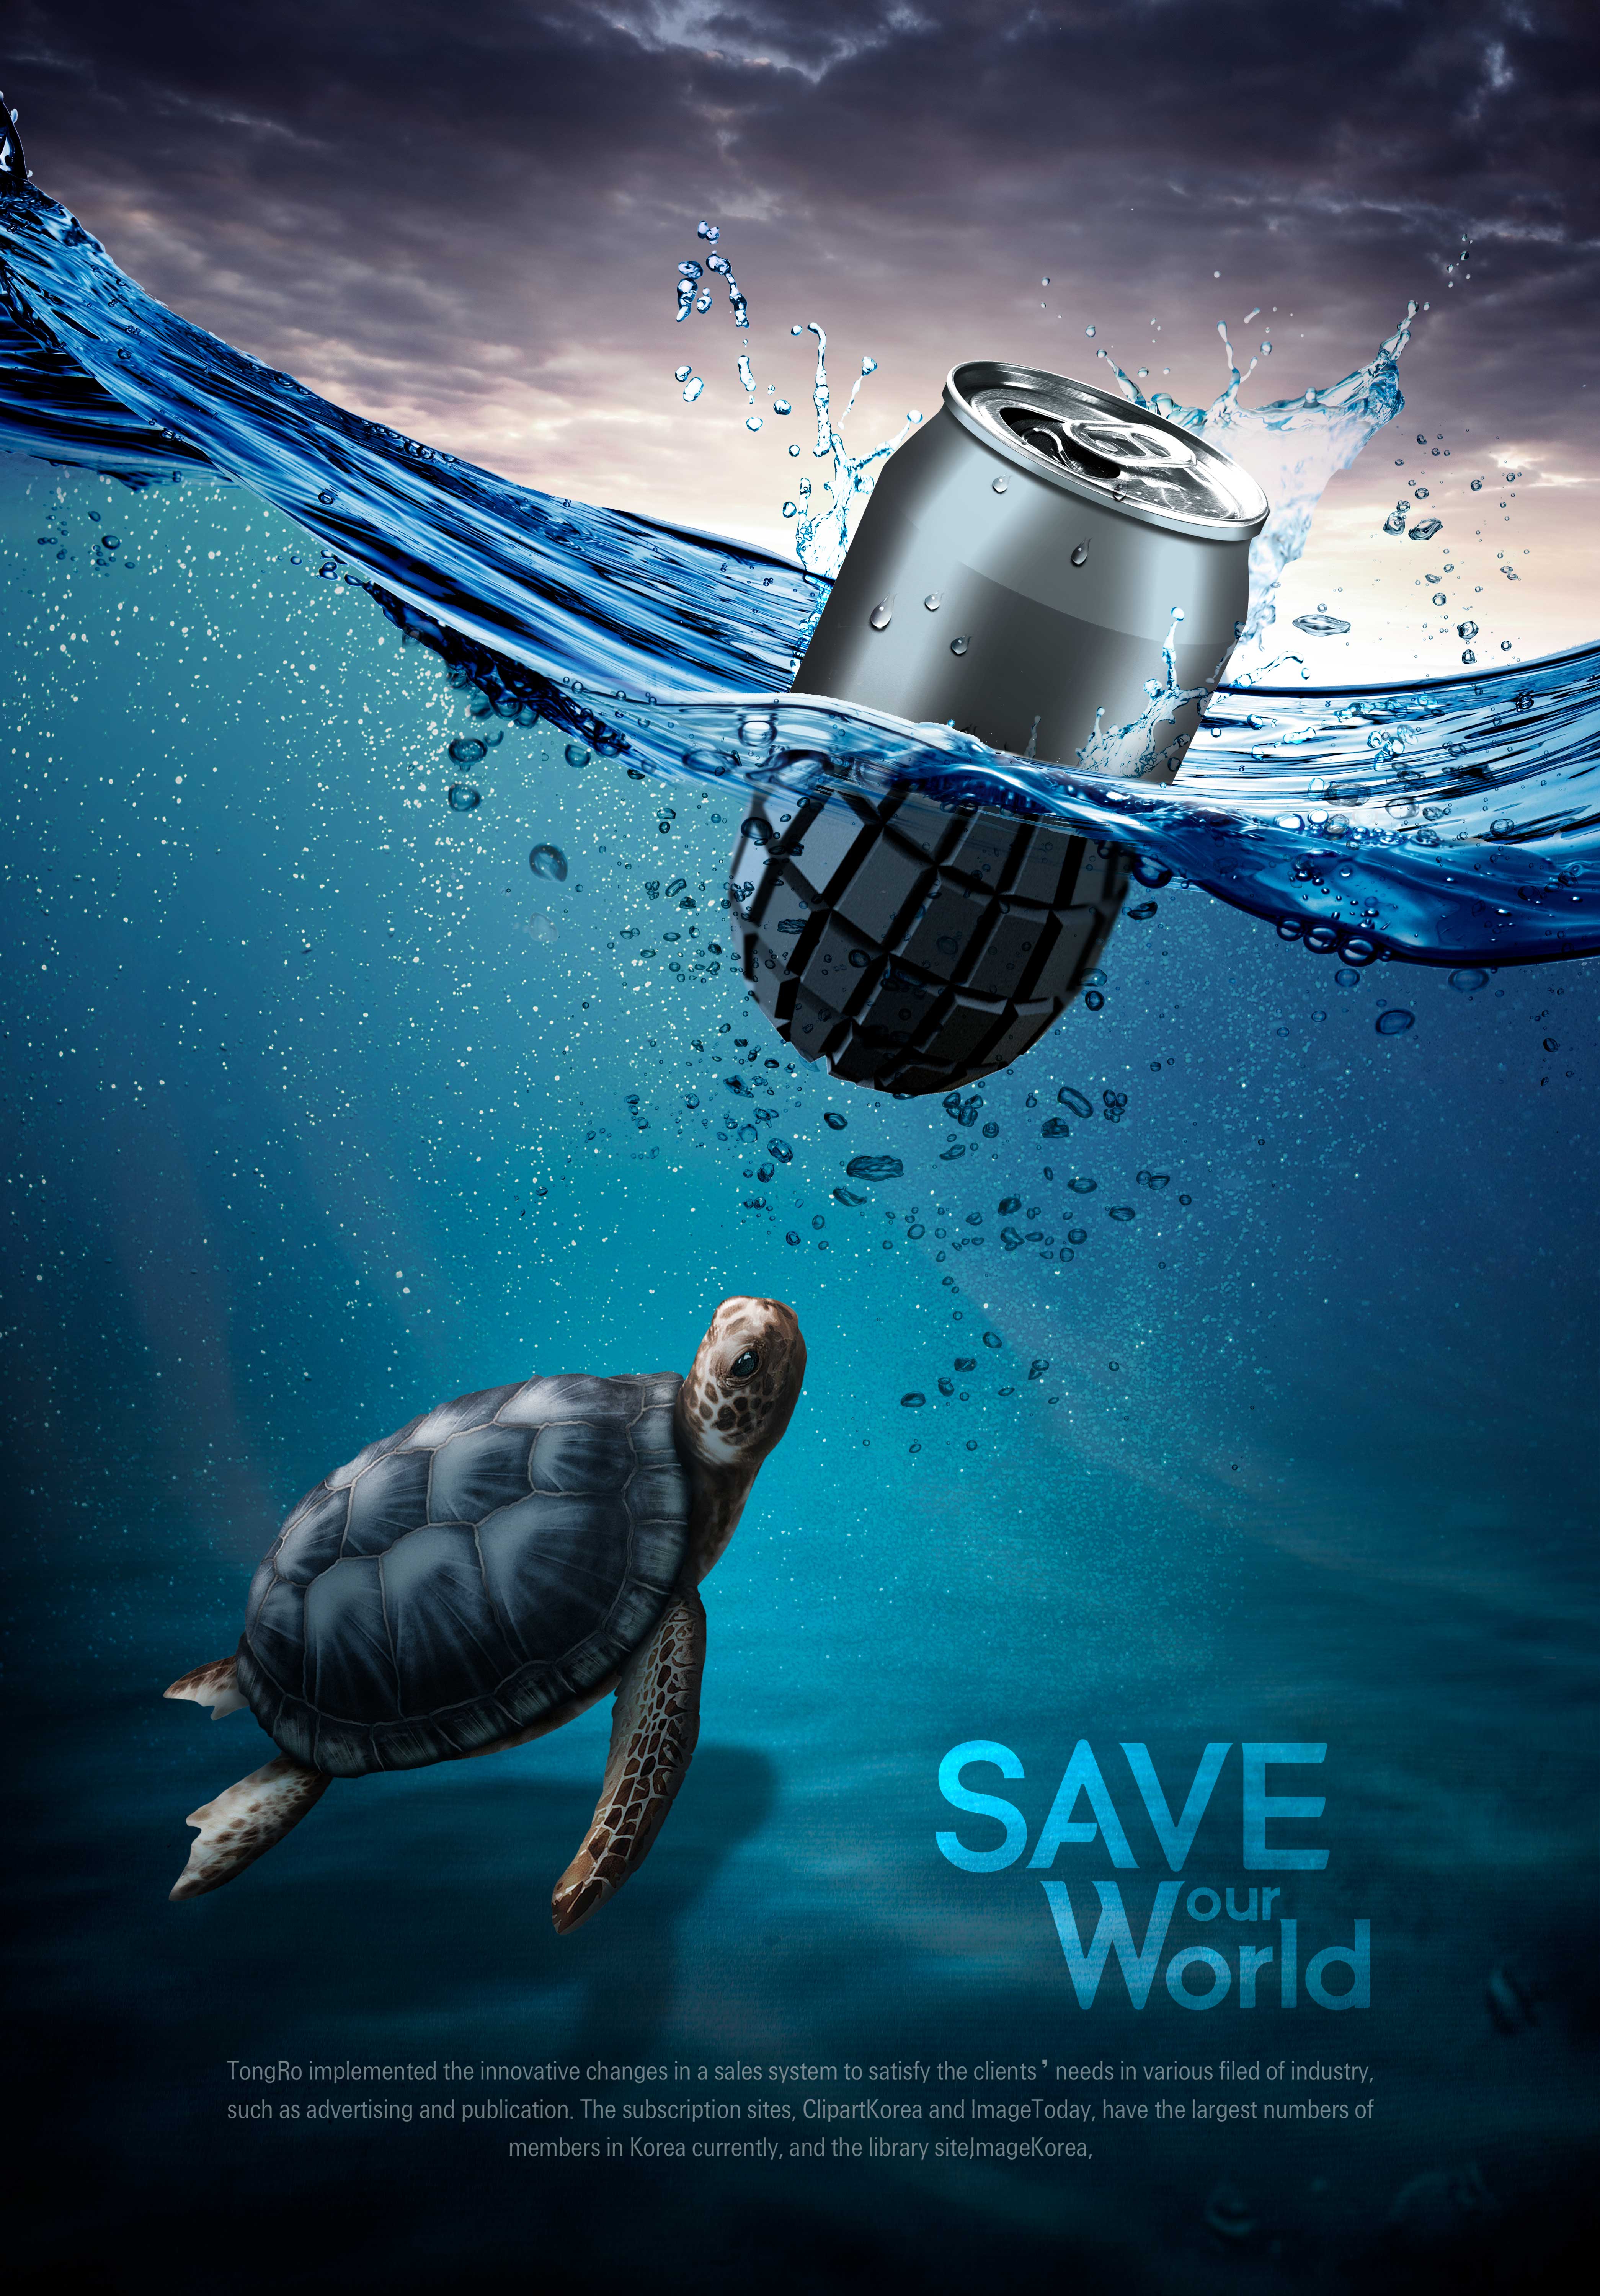 保护海洋环境主题公益广告海报设计psd素材 – 设计小咖